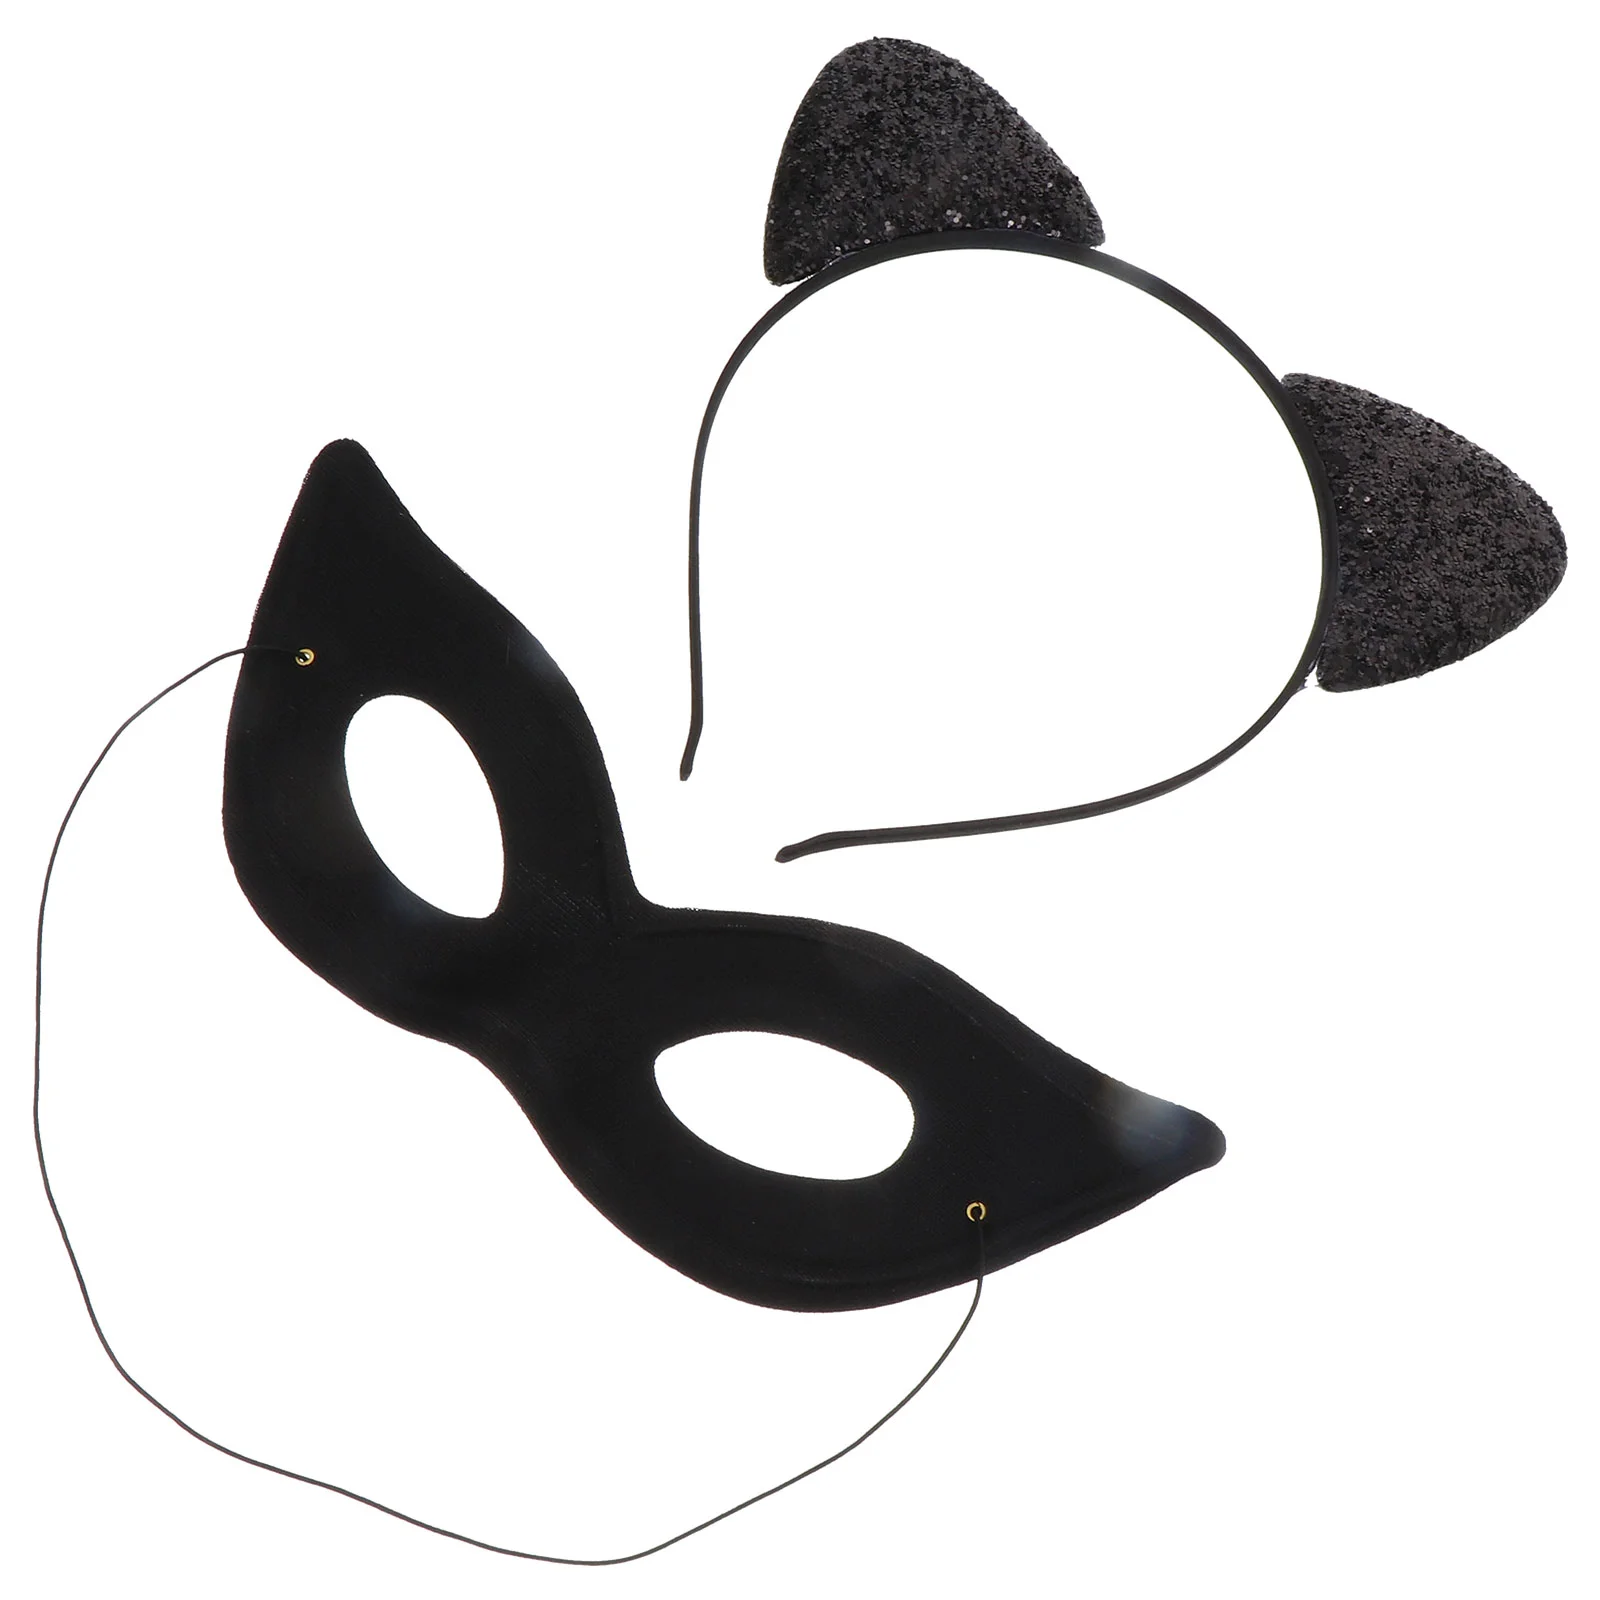 

Повязка на голову с кошачьими ушками, привлекательный головной убор с животными, праздничный тканевый декоративный ободок для волос